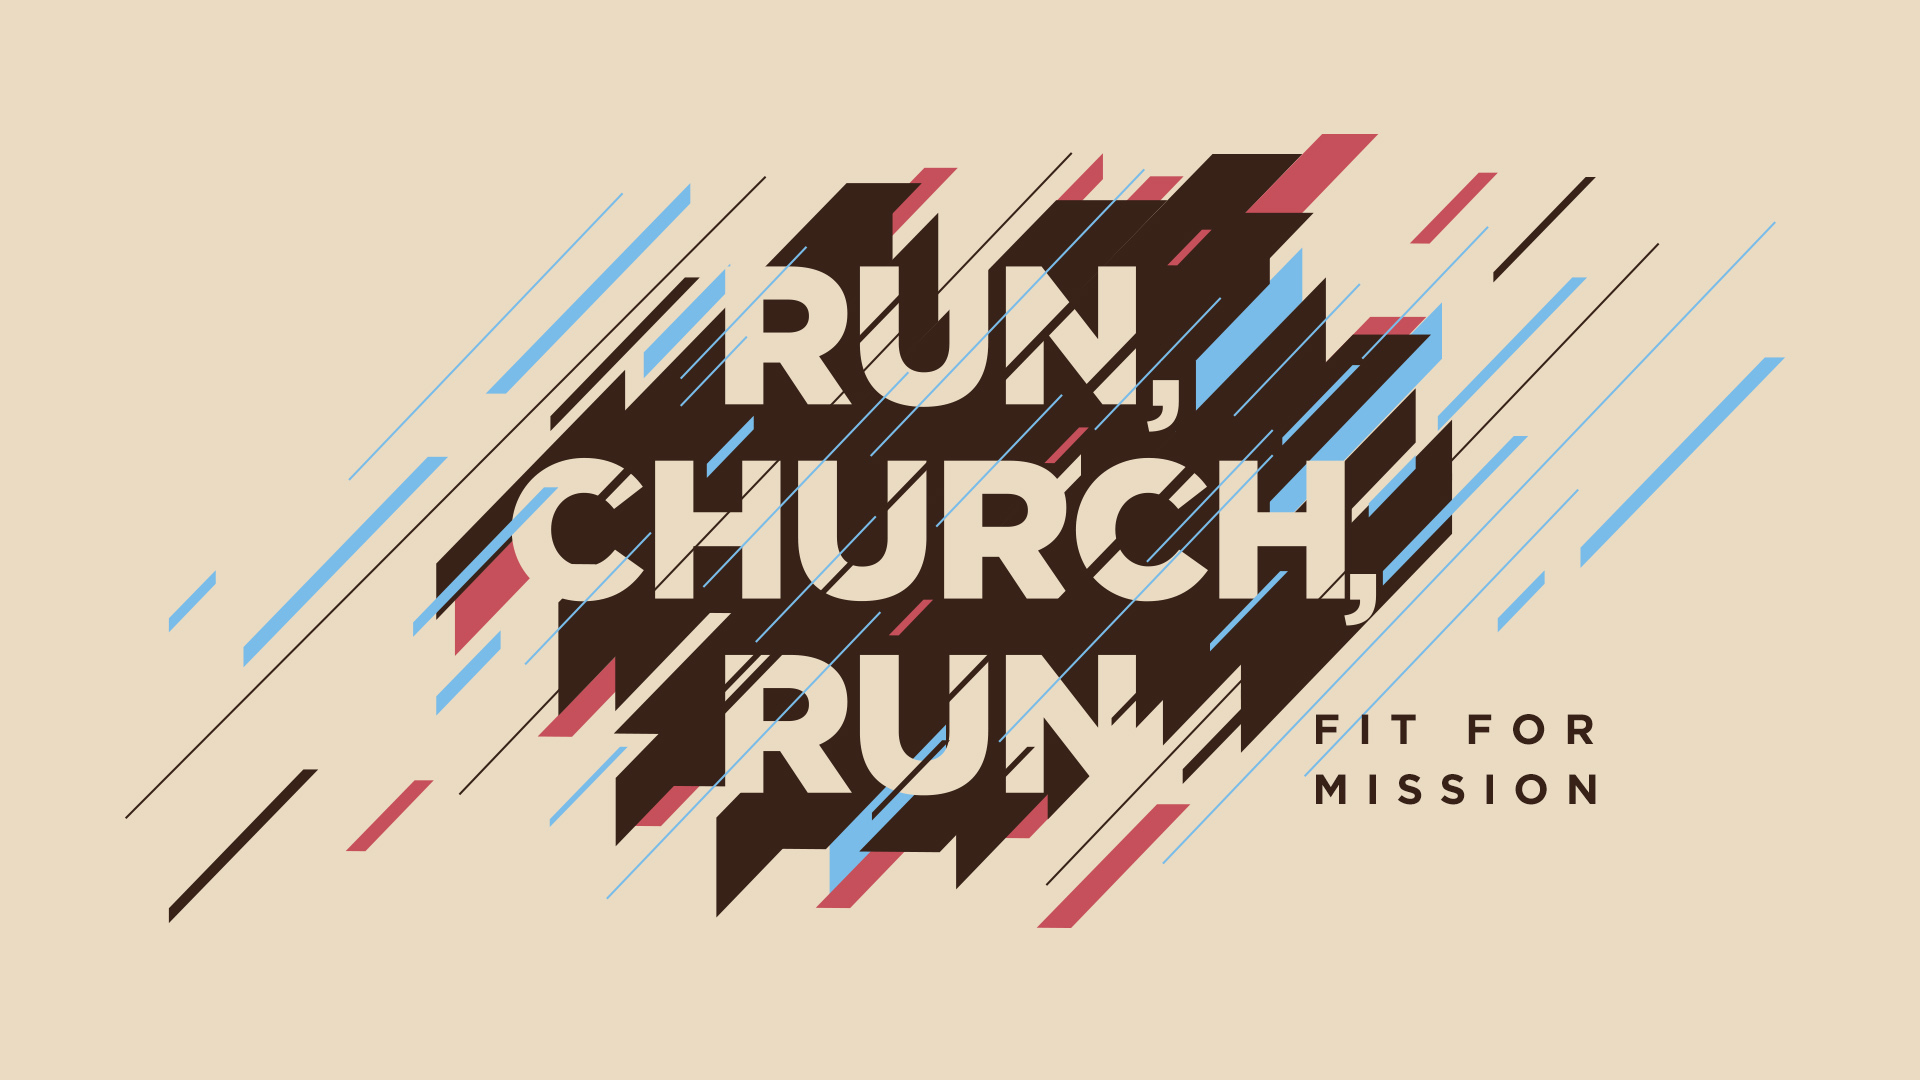  Run, Church, Run